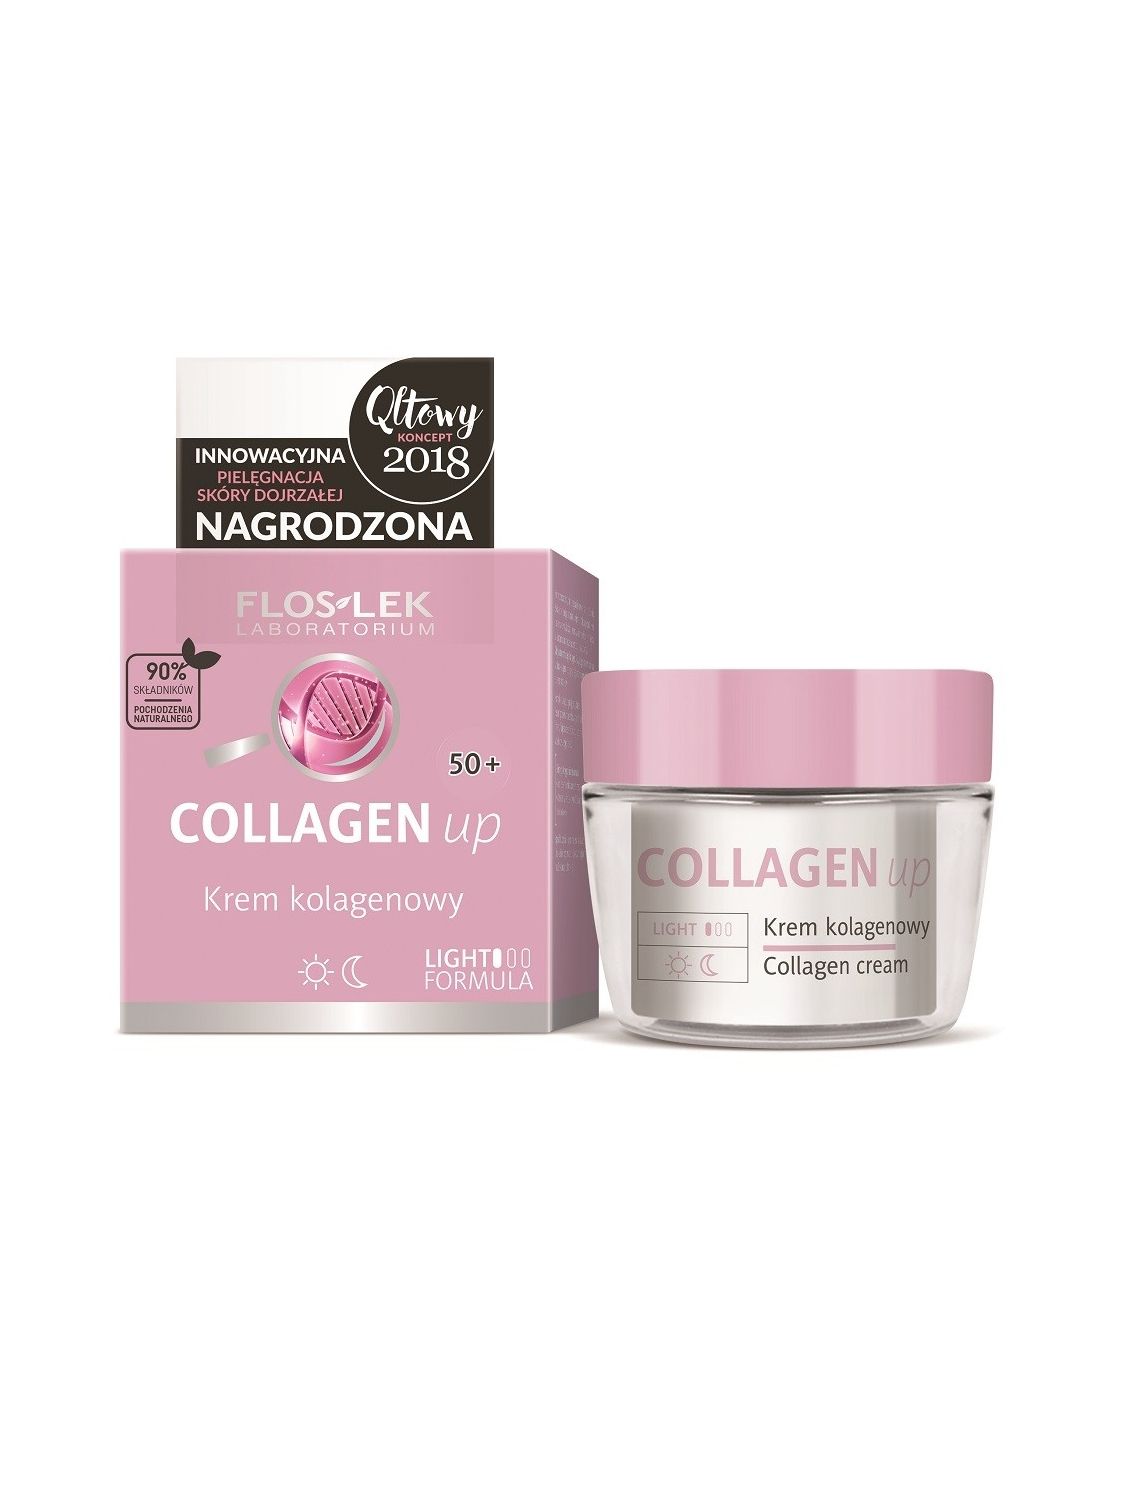 COLLAGEN up® Collagen cream - 50 ml - Floslek